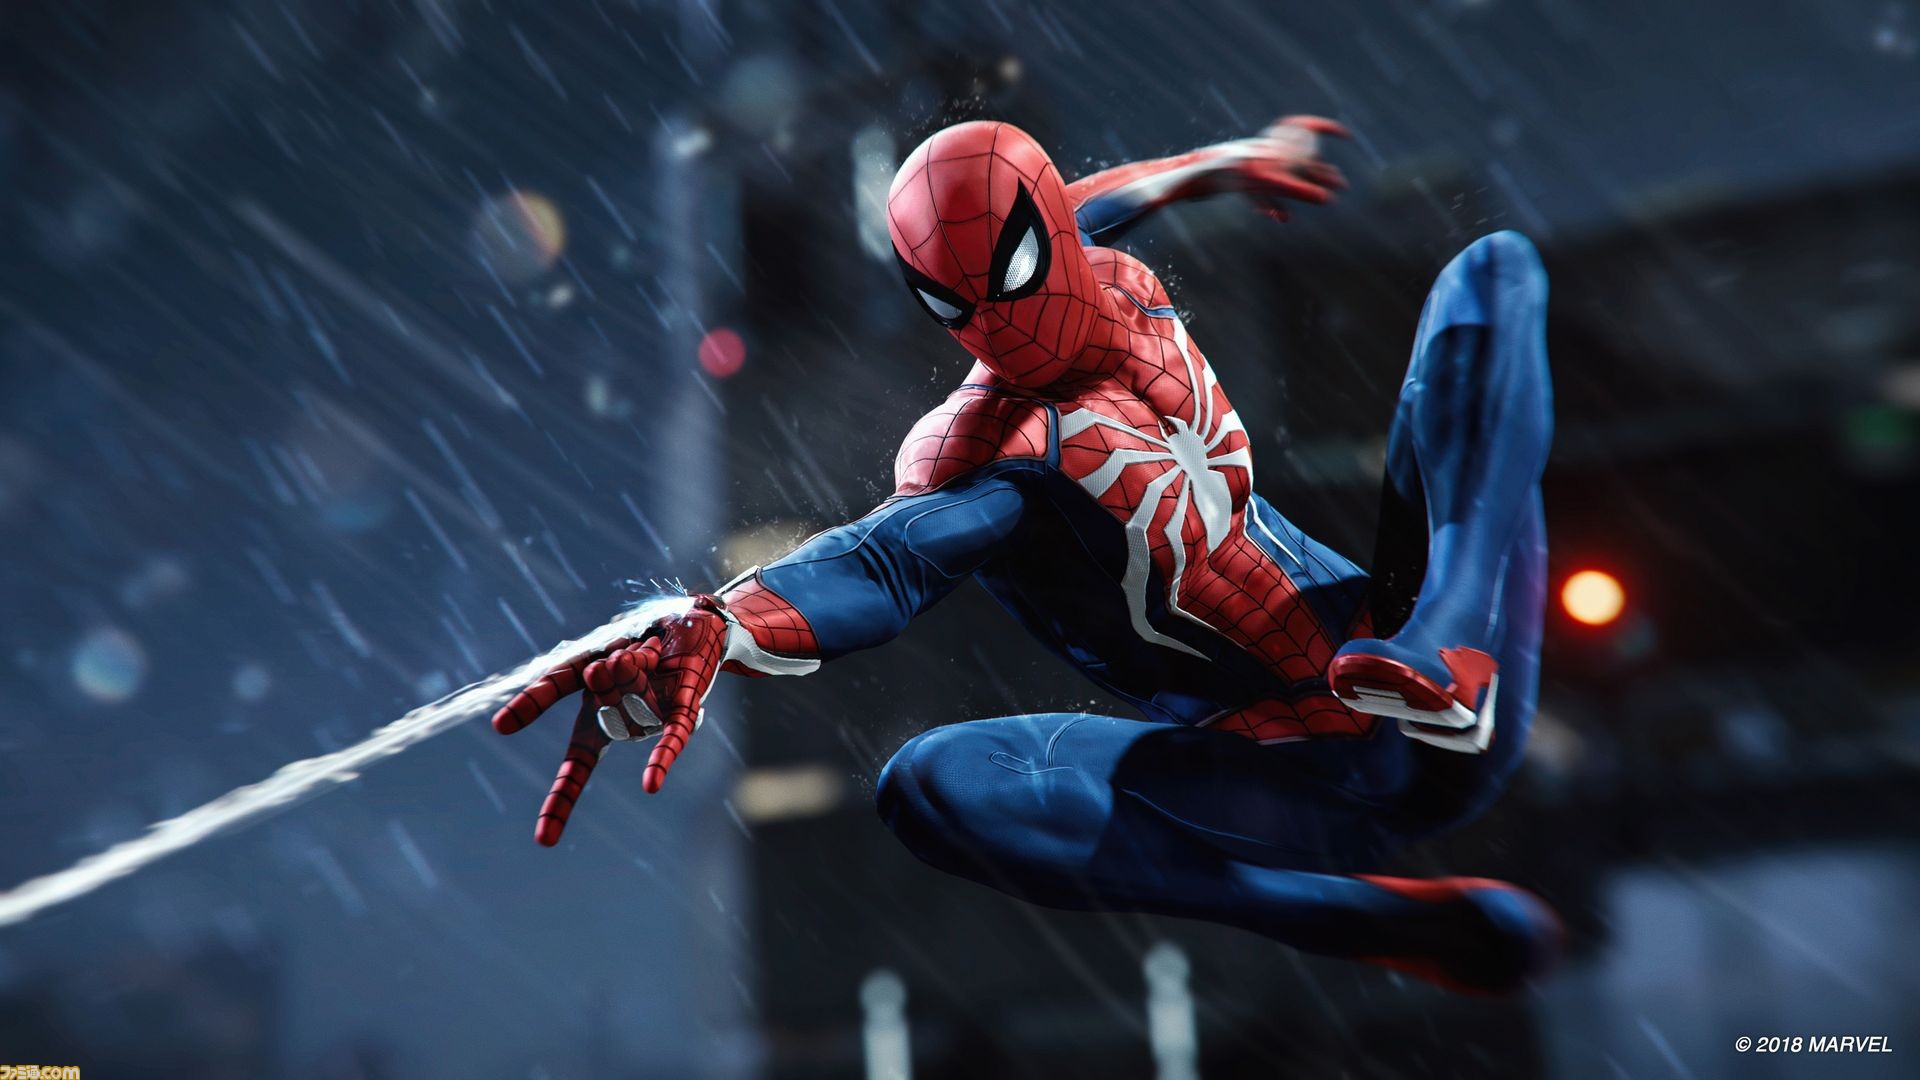 Ps4 Marvel S Spider Man スパイダーマン が発売3日で世界累計330万本以上を販売 Ps4 ゴッド オブ ウォー を超えsie最速記録 ファミ通 Com